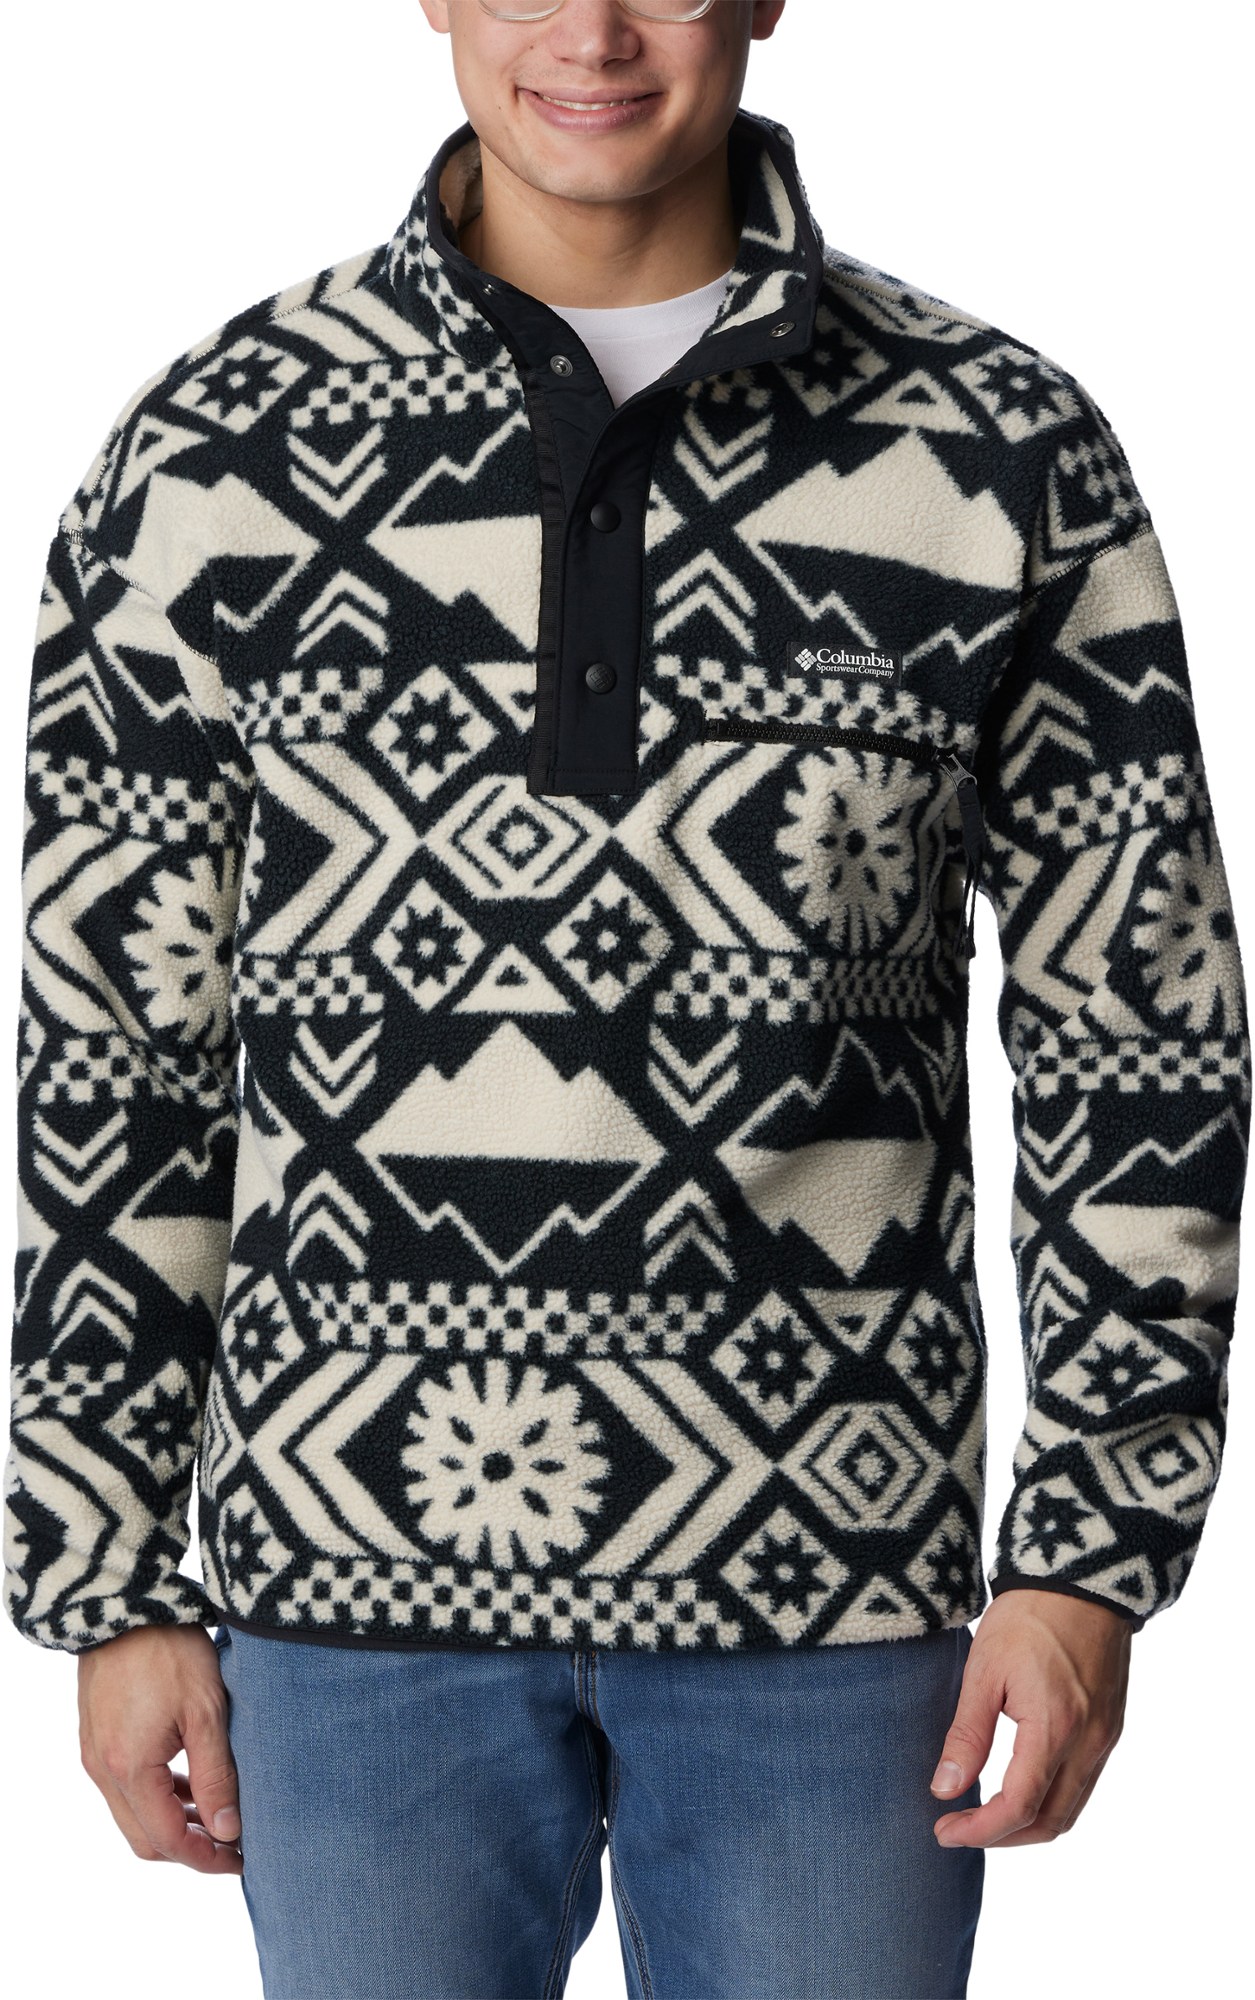 Флисовый пуловер Helvetia с полузастежкой - мужской Columbia, черный женский кашемировый пуловер ажурный пуловер в китайском ретро стиле с полувысоким воротником и дисковыми пуговицами осень зима